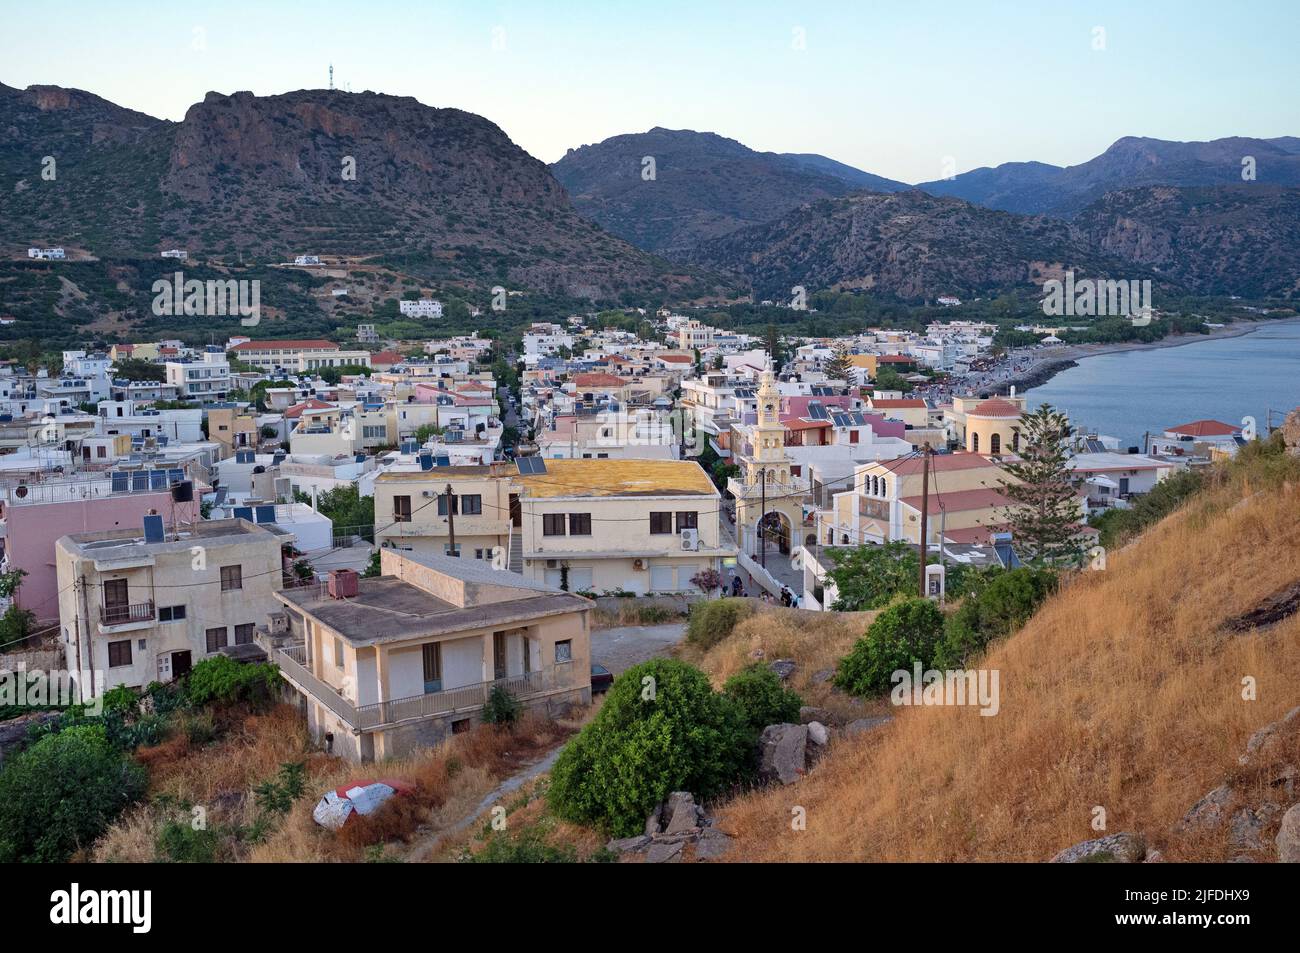 The Cretan town of Palaiochora Stock Photo